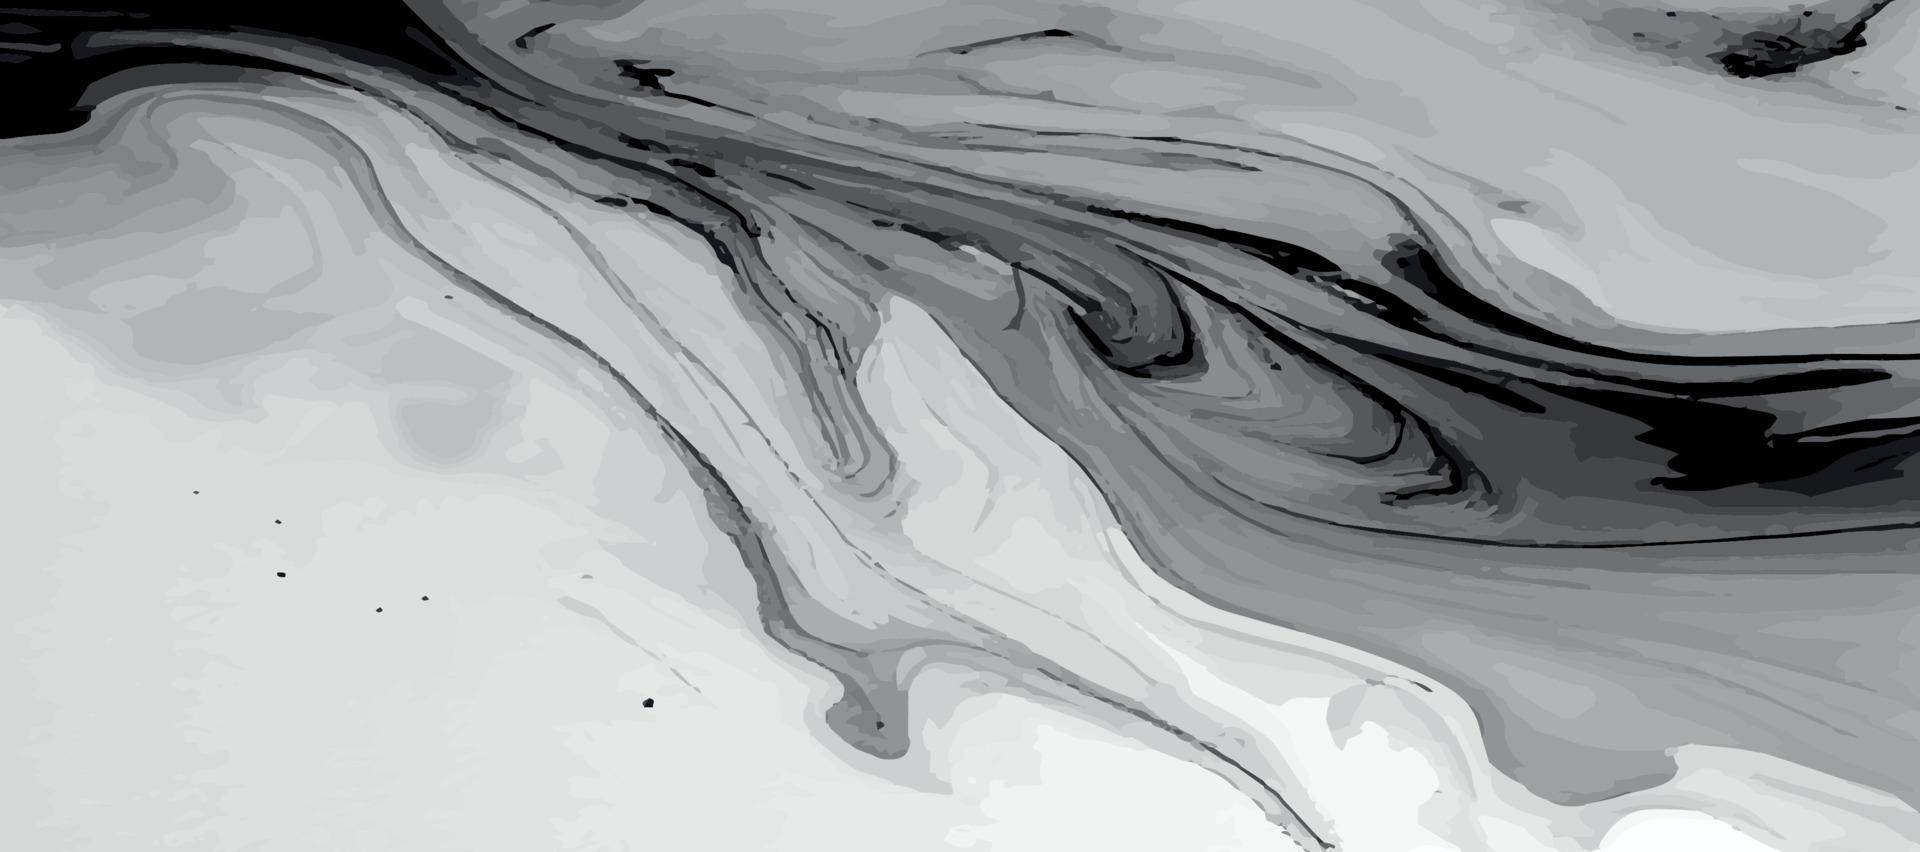 Marmor Panorama- Textur, bunt schwarz und Weiß grau Marmor Oberfläche, gebogen Linien, hell abstrakt Hintergrund Design - - Vektor